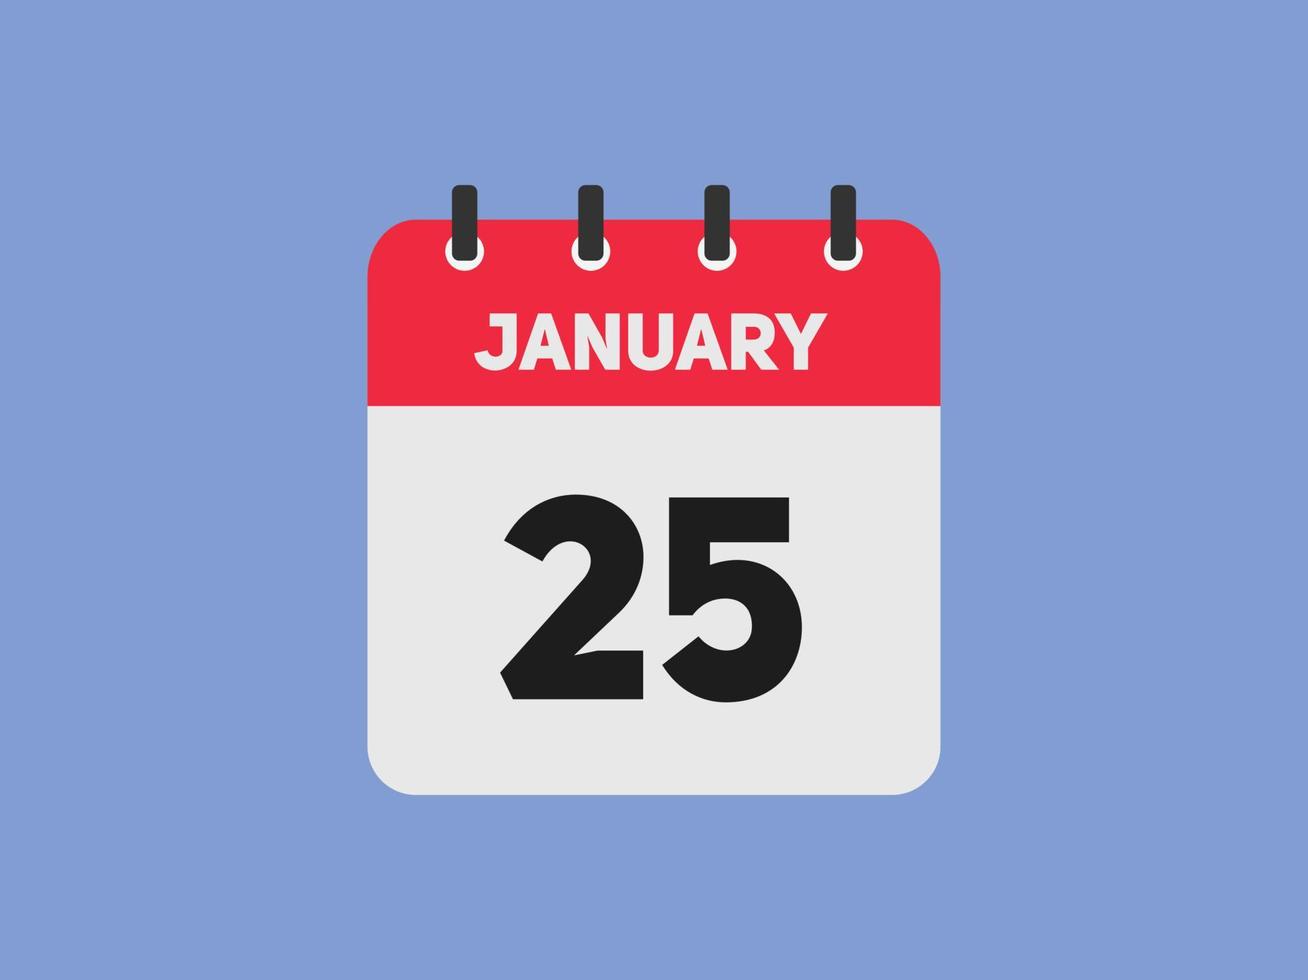 Recordatorio del calendario del 25 de enero. Plantilla de icono de calendario diario del 25 de enero. plantilla de diseño de icono de calendario 25 de enero. ilustración vectorial vector